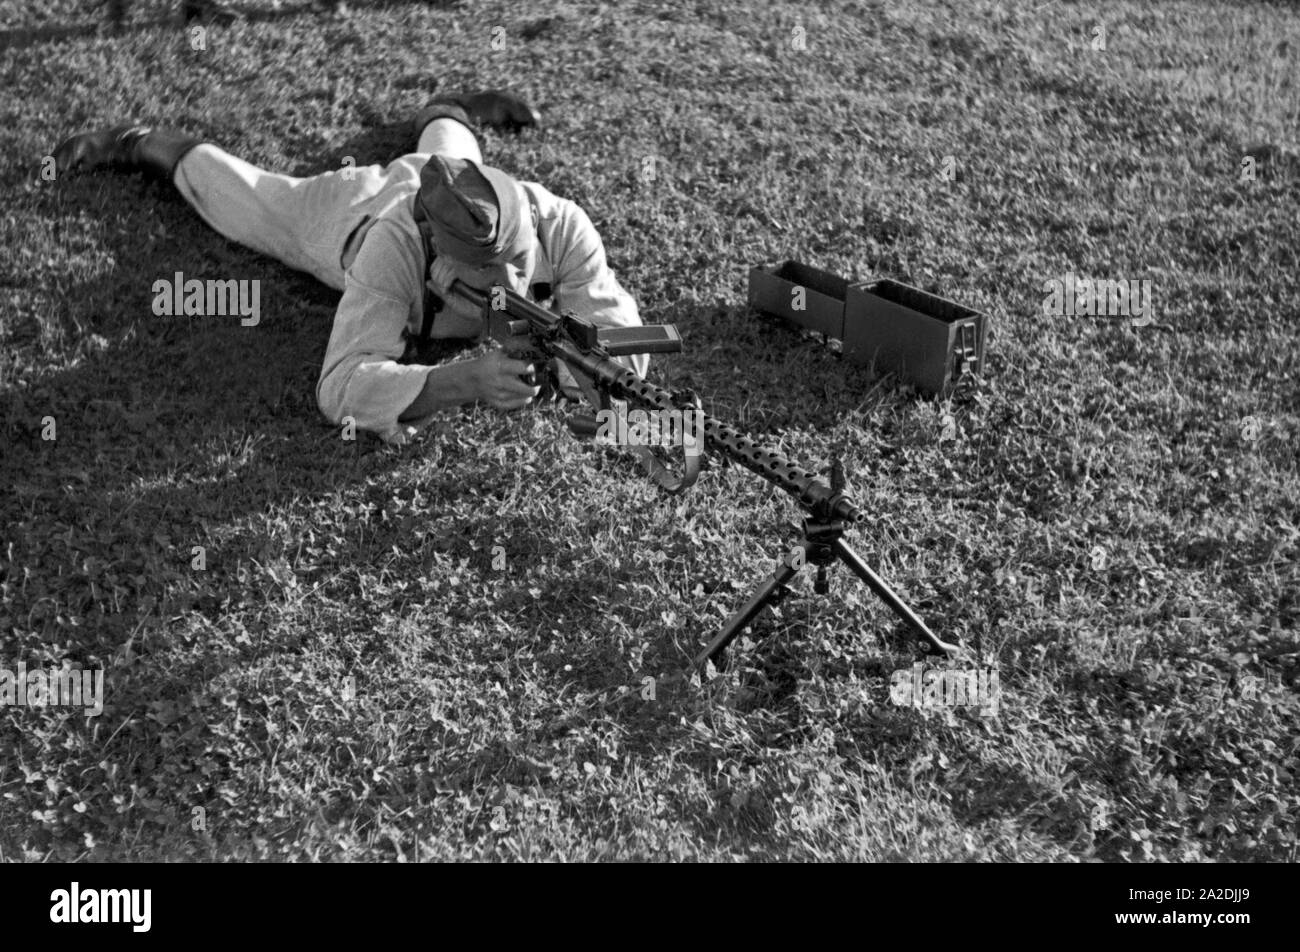 Rekrut der Flieger Ausbildungsstelle Schönwalde beim Übungsschießen mit dem Maschinengewehr MG 34, Deutschland 1930er Jahre. Recruit training with machine gun MG 34, Germany 1930s. Stock Photo